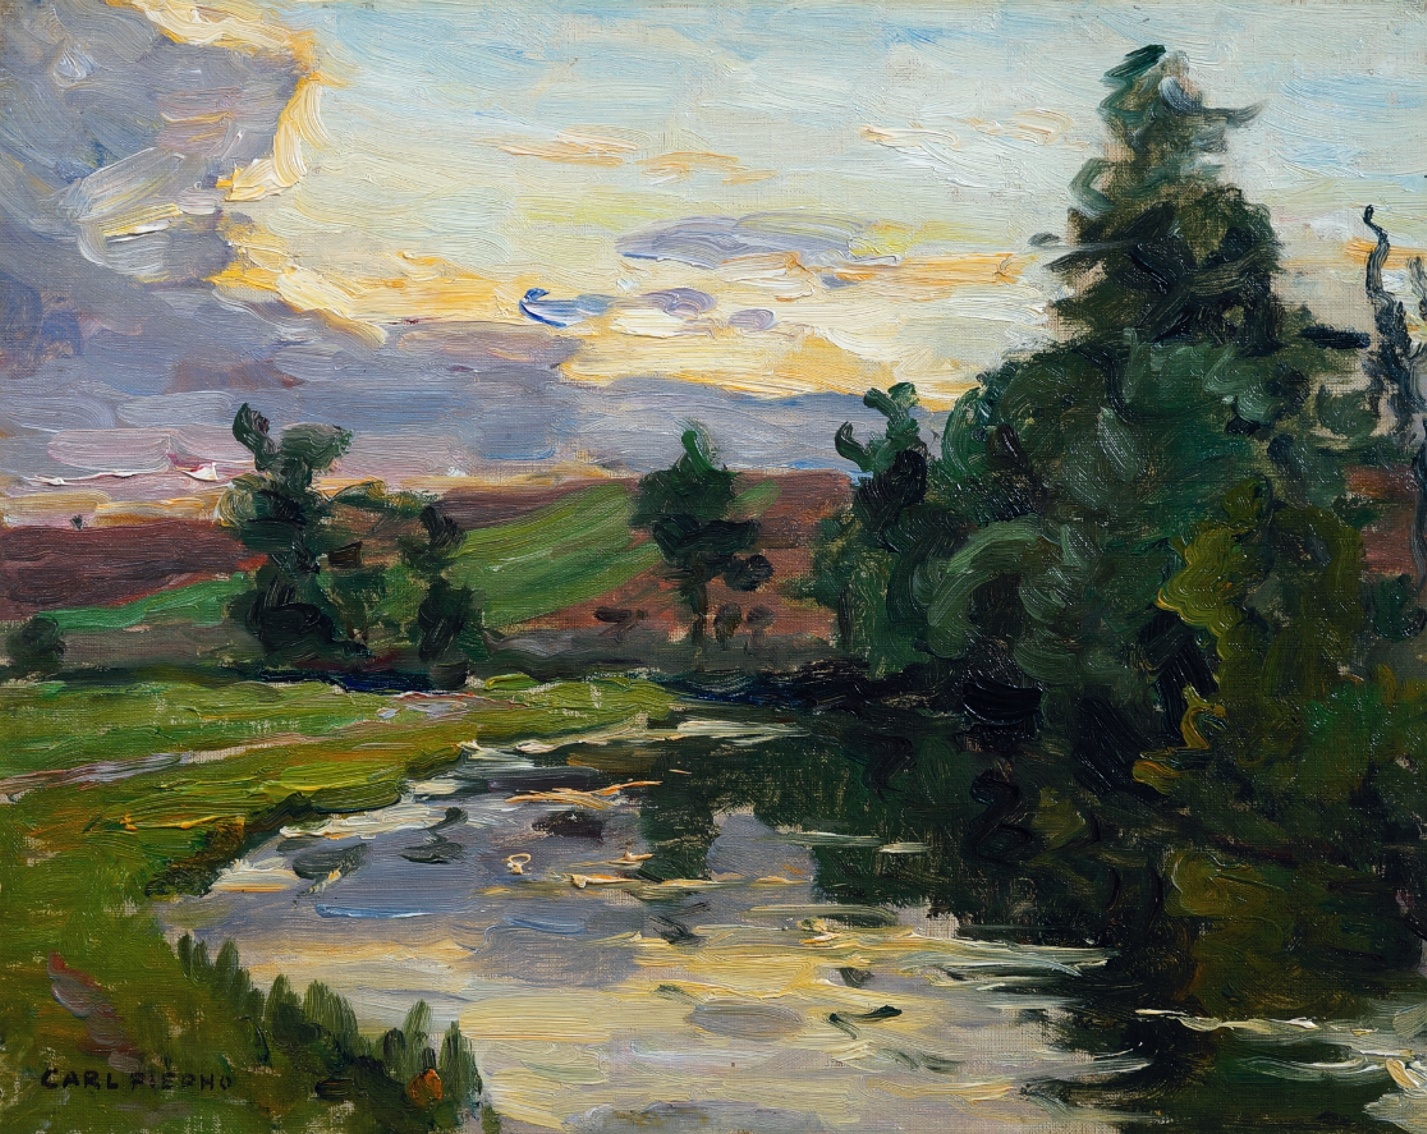 Carl Piepho (1869 - 1920) » Öl-Gemälde Impressionismus süddeutsche Malerei